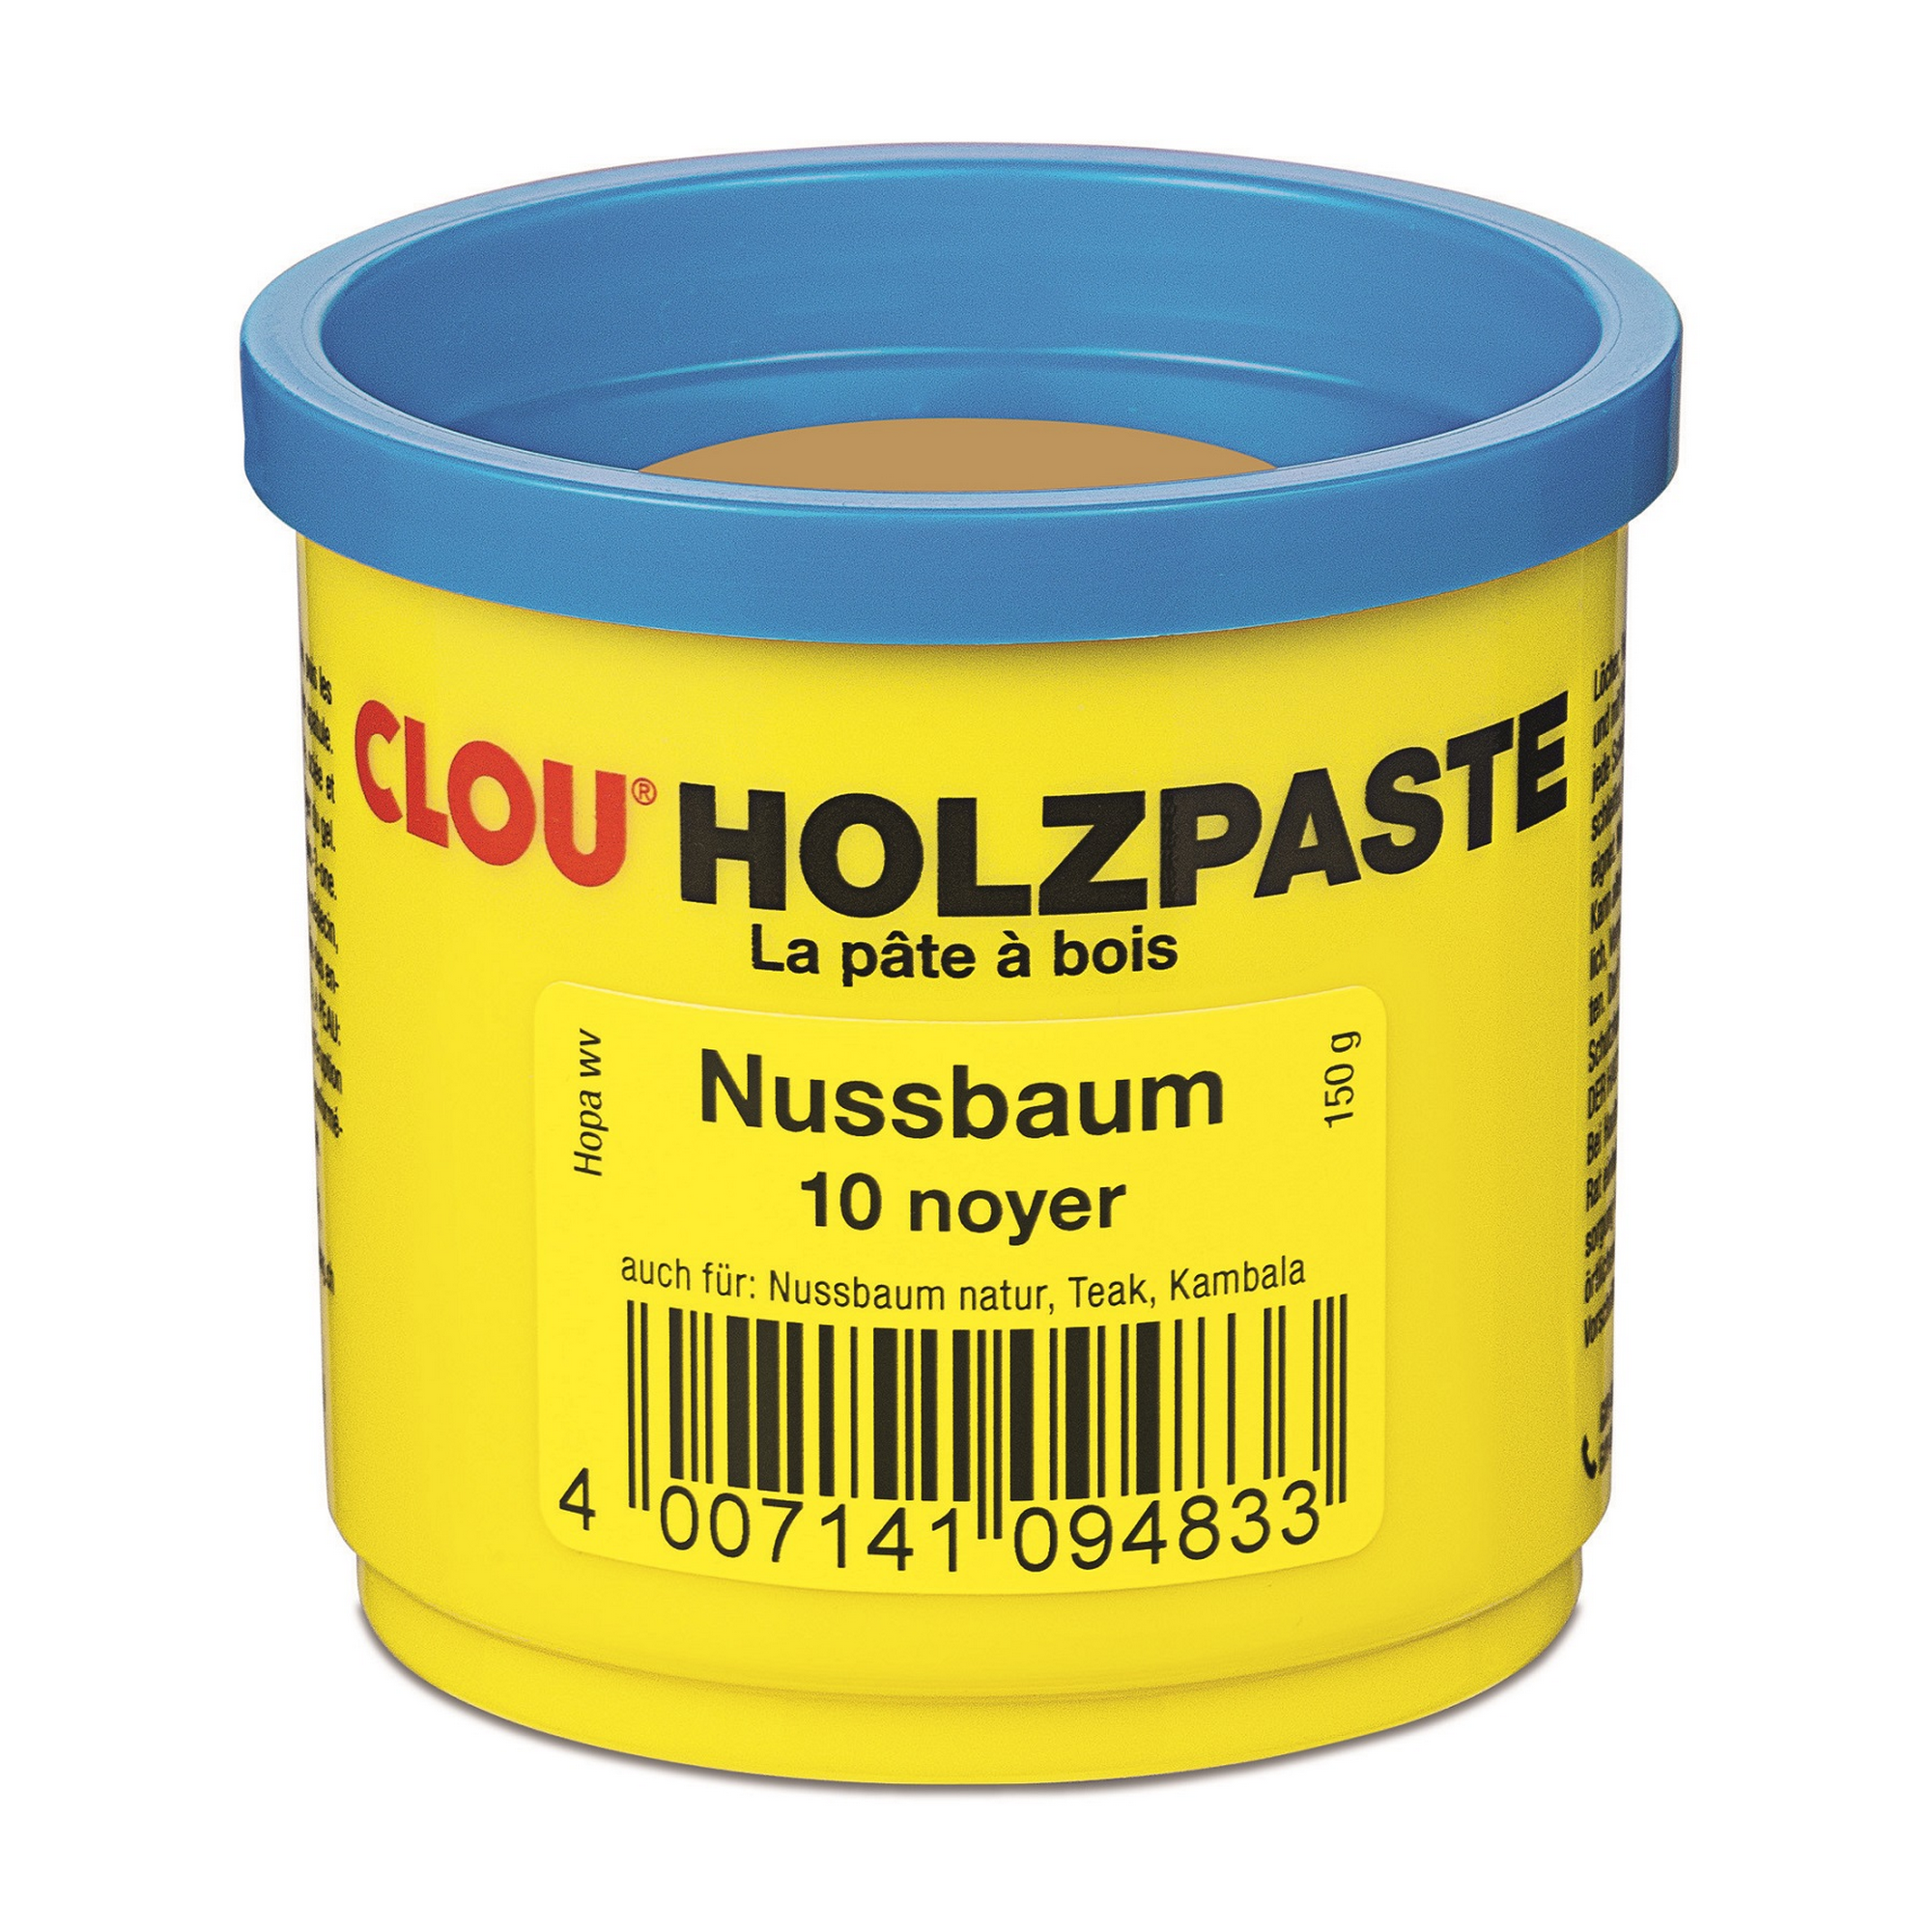 Holzpaste nussbaumfarben 150 g + product picture